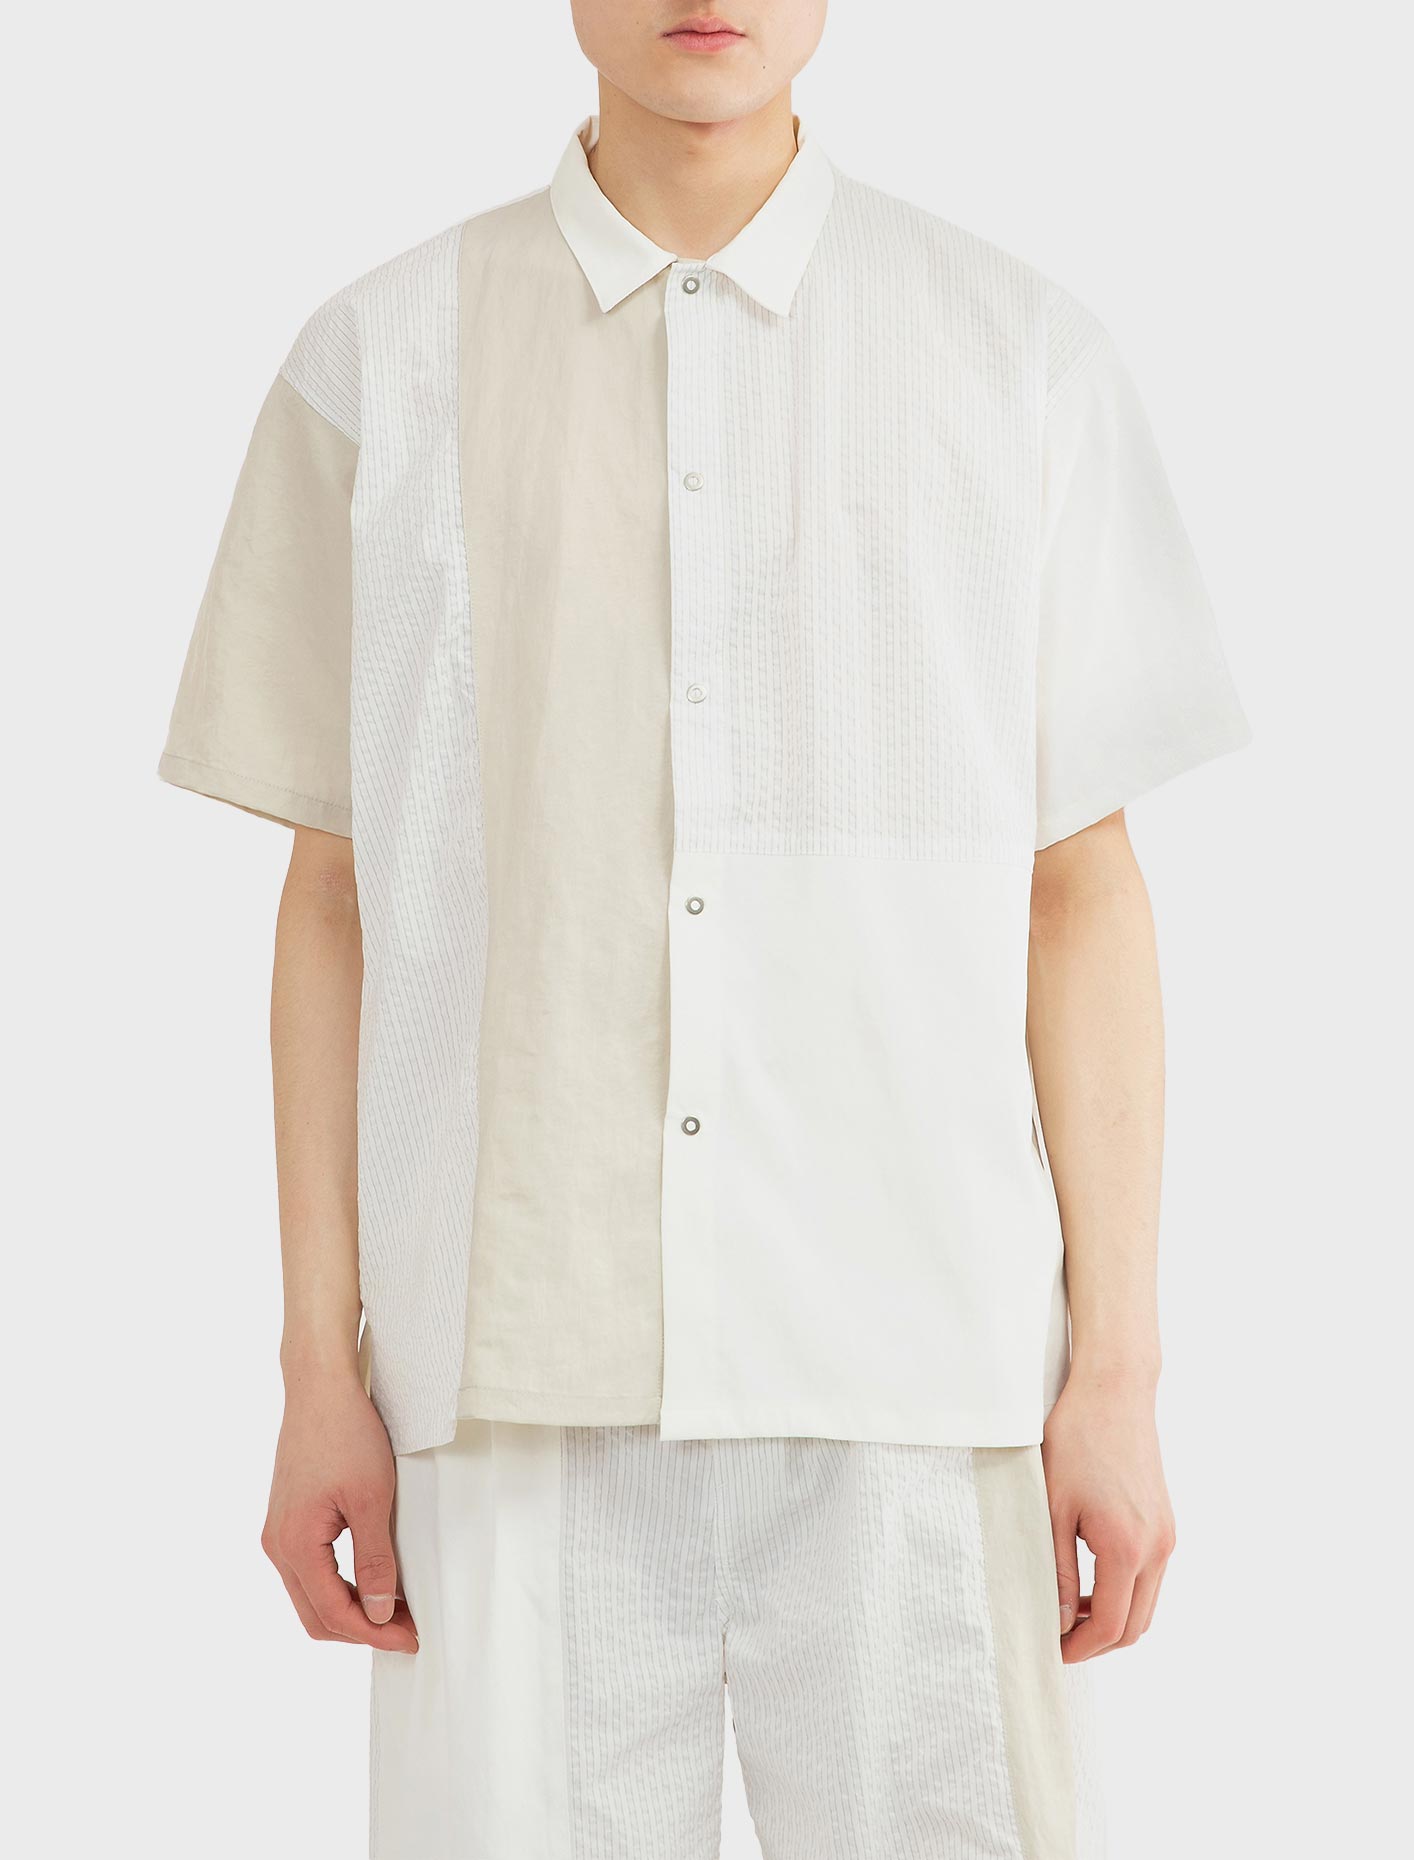 키미 OC 숏 슬리브 셔츠 화이트